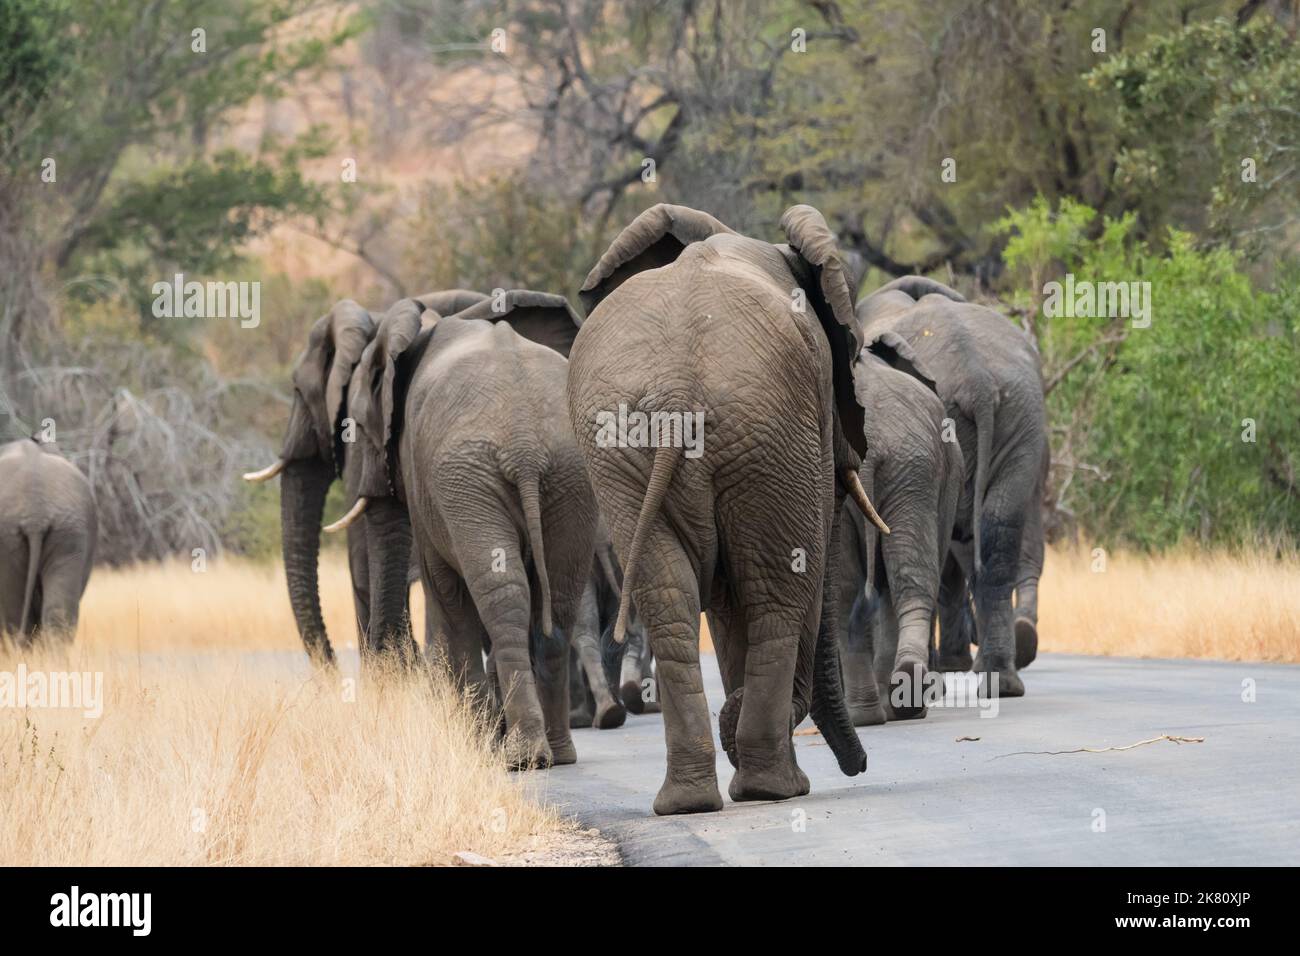 Rebaño, grupo, familia de elefantes africanos (Loxodonta africana) caminando uno detrás del otro en una carretera en el parque nacional Kruger, Sudáfrica Foto de stock